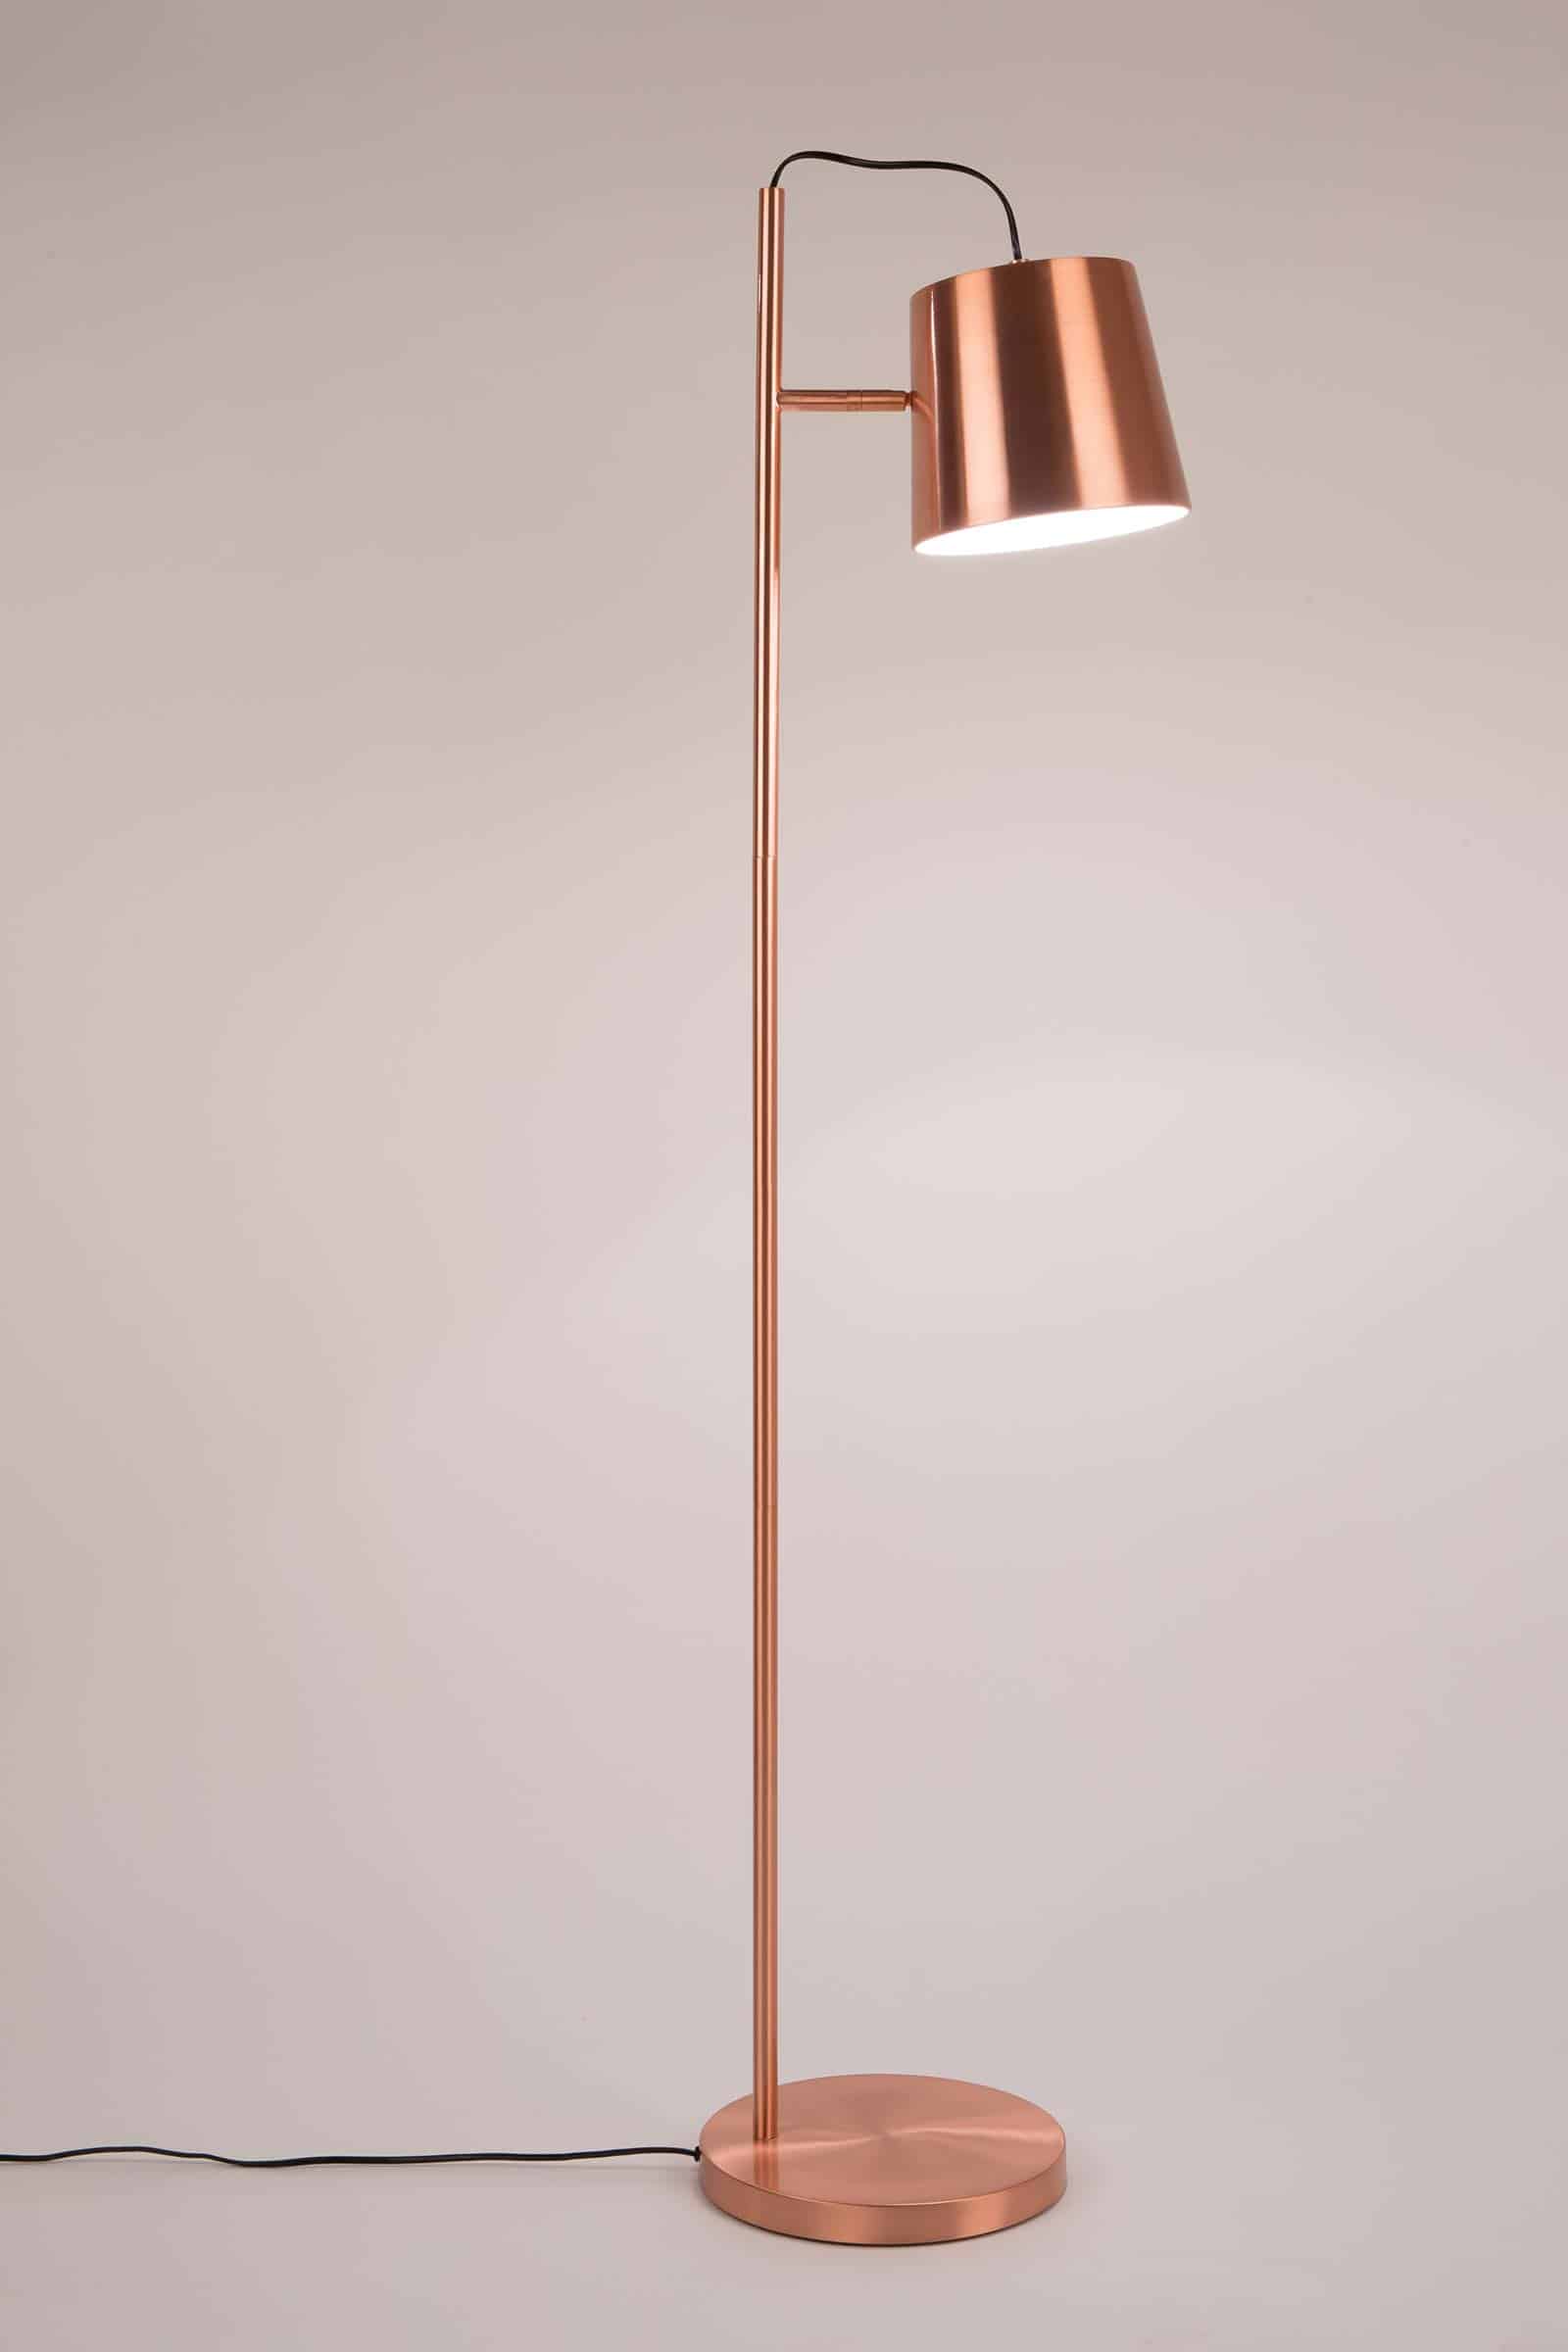 Golf motor woensdag Buckle Head staanlamp by Zuiver - Designshopp